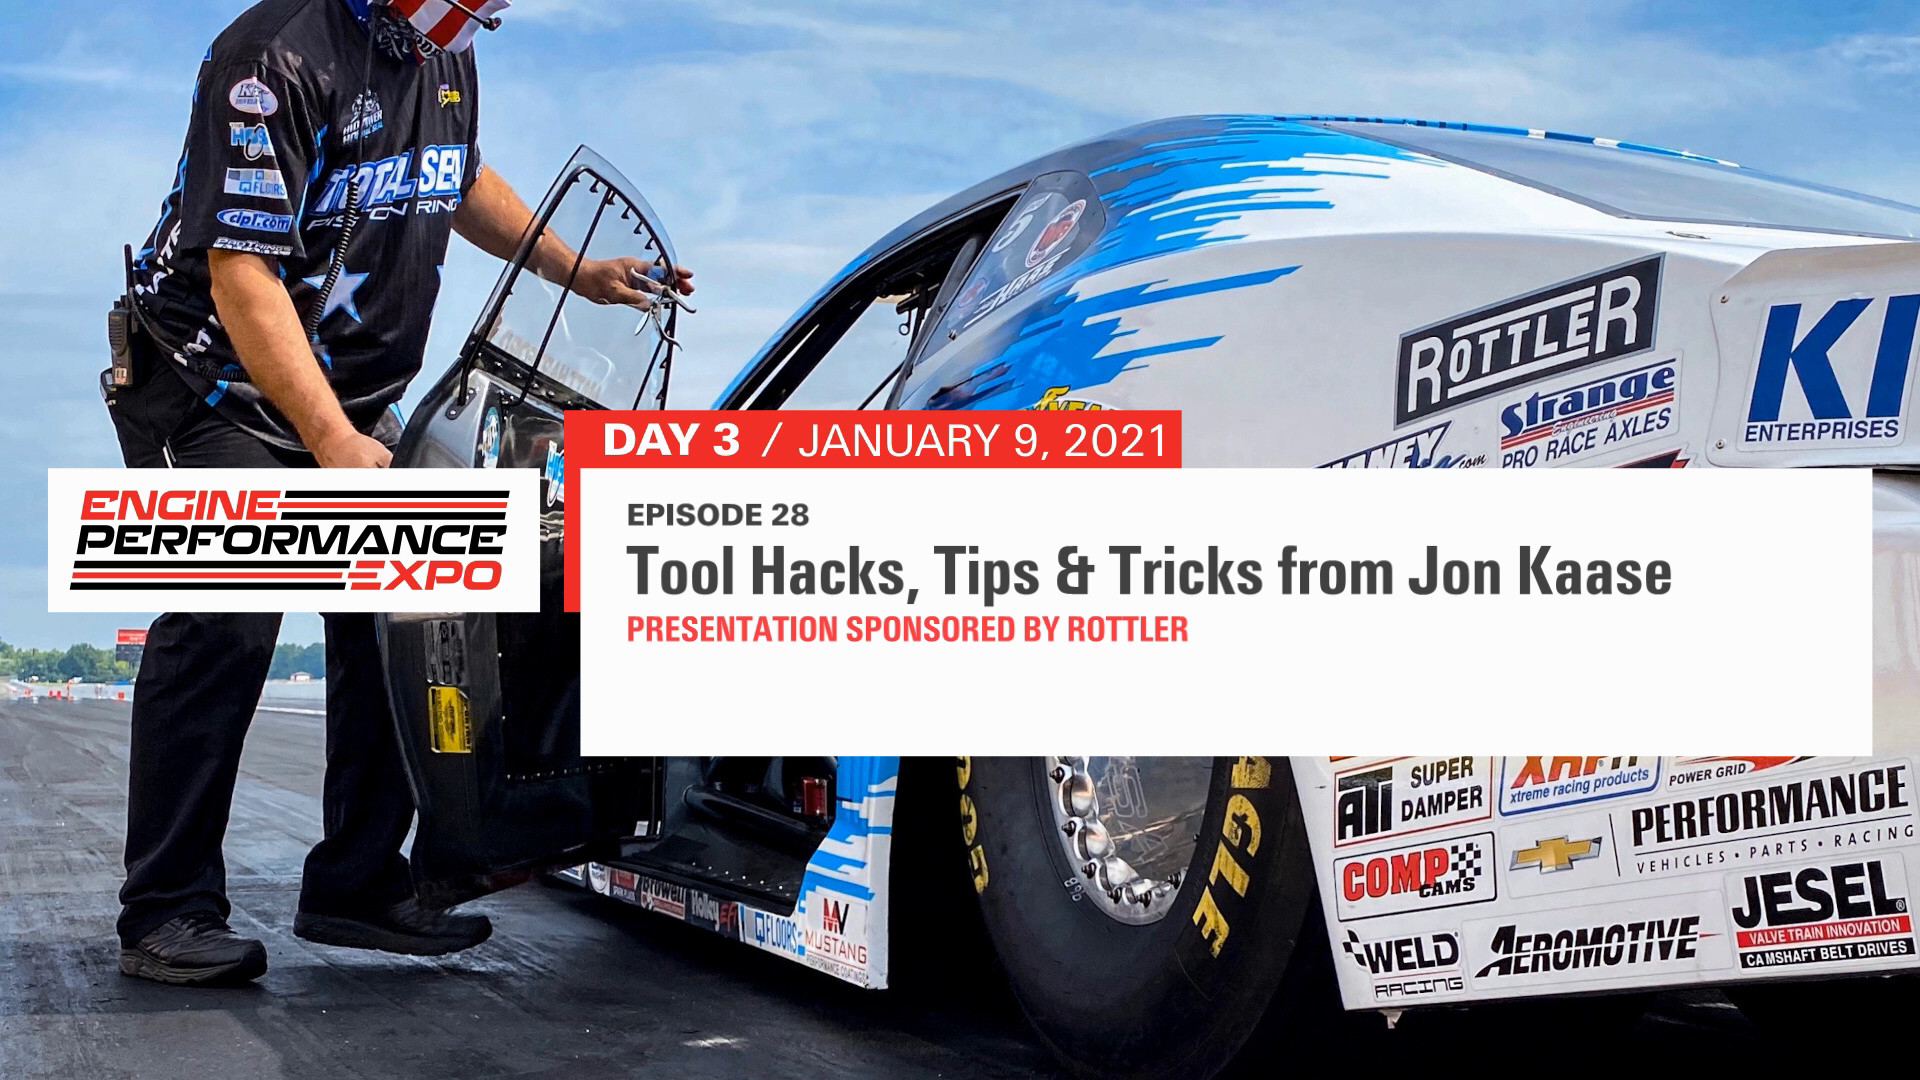 Jon Kaase tool hacks, tips & tricks